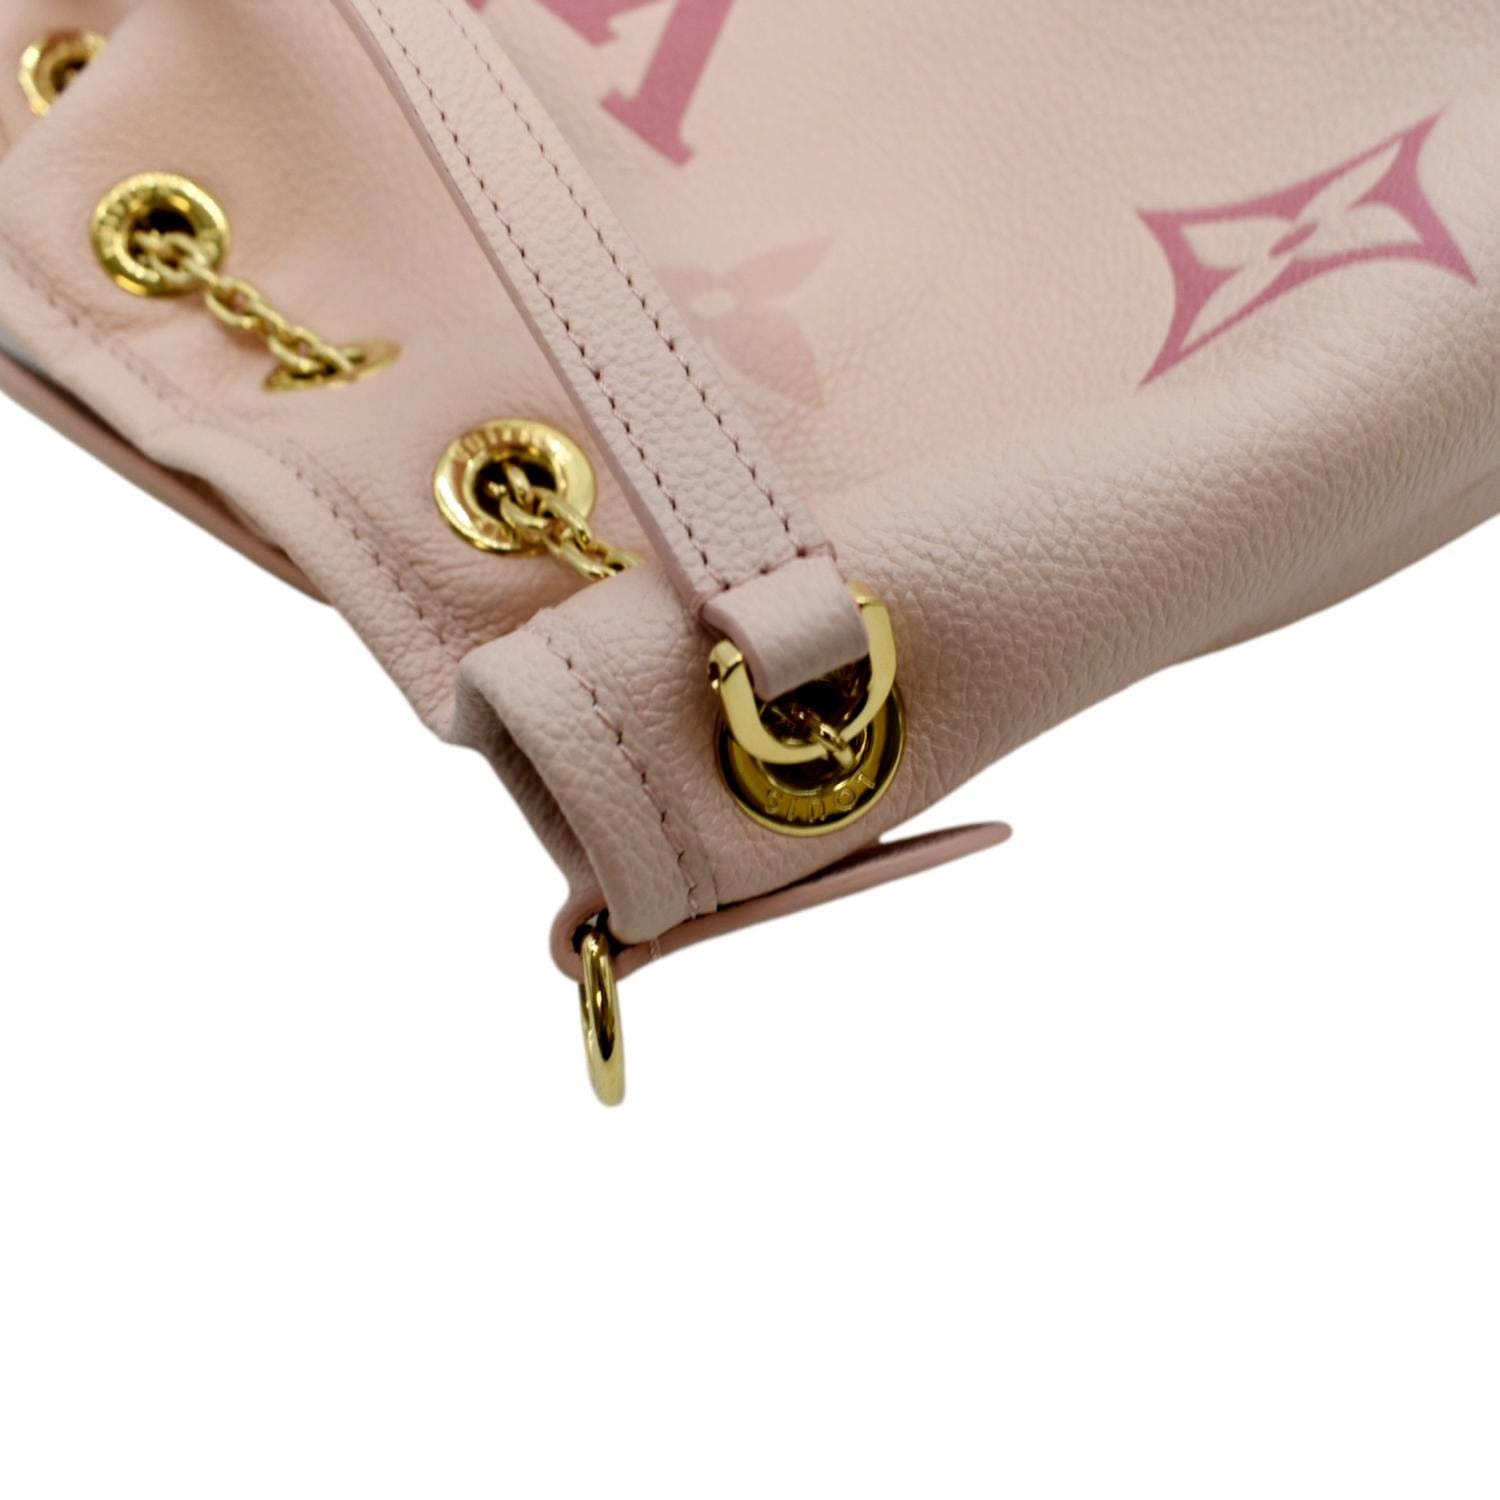 Louis Vuitton Limited Edition Baby Pink Monogram Vernis Lexington